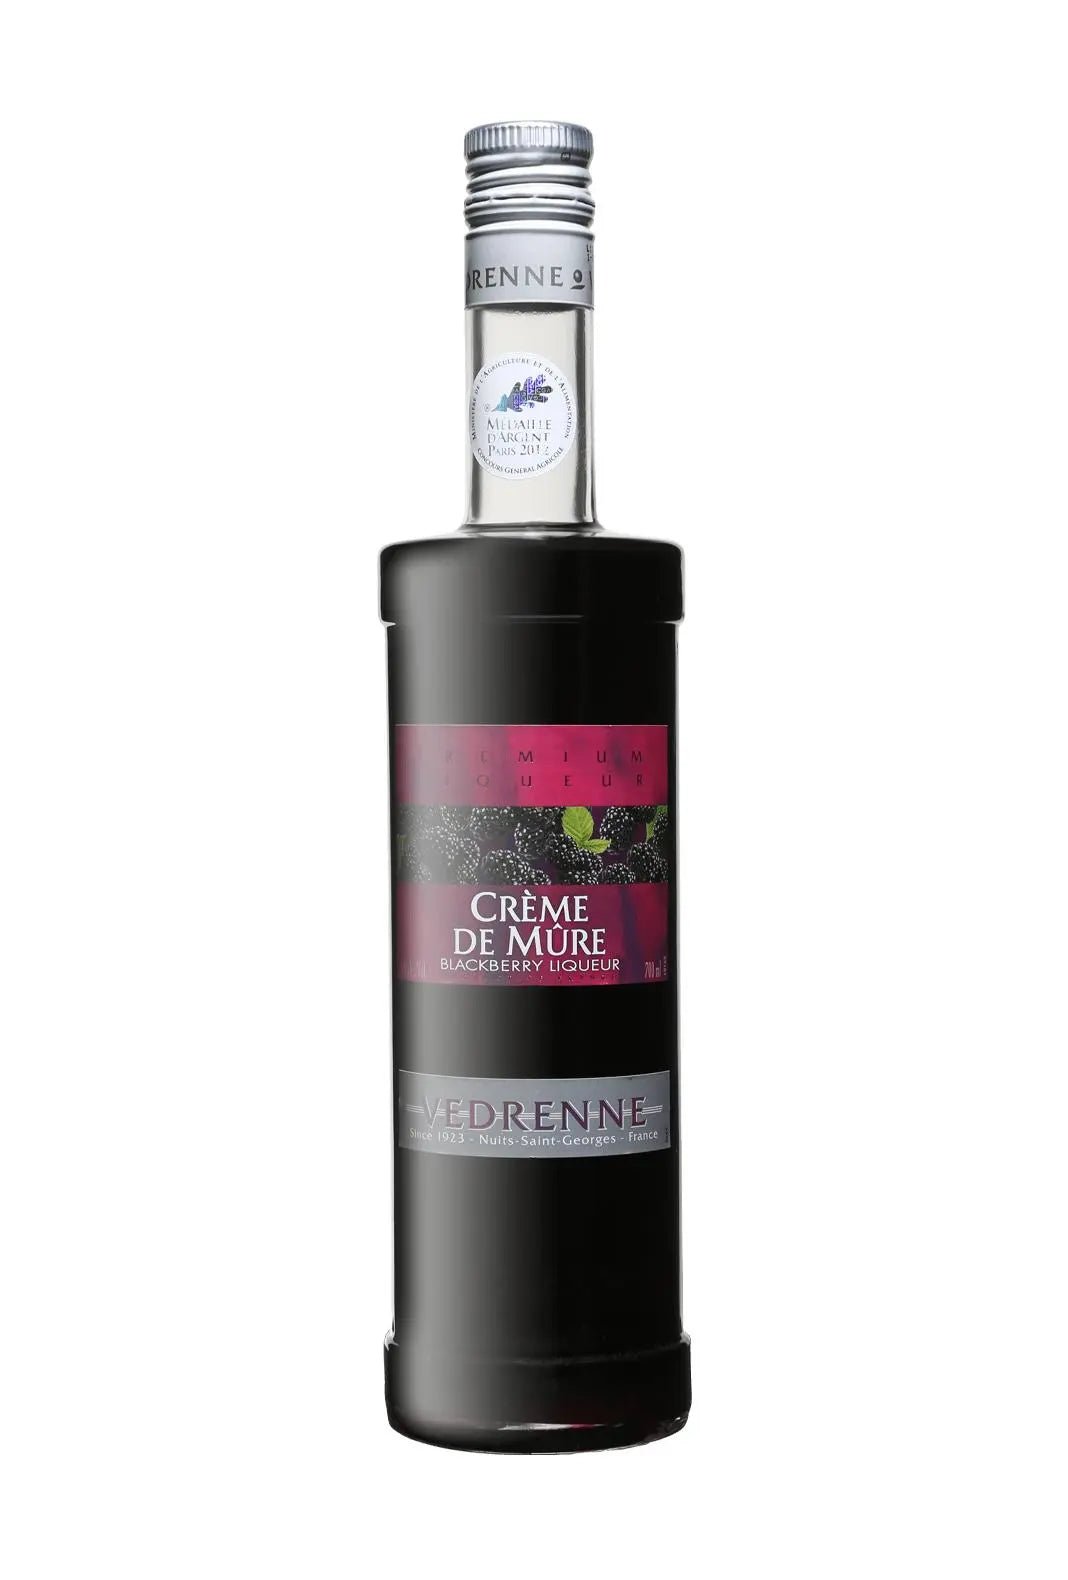 Vedrenne Creme de Mure (Blackberry liqueur) 15% 700ml - Fruit Liqueur - Liquor Wine Cave